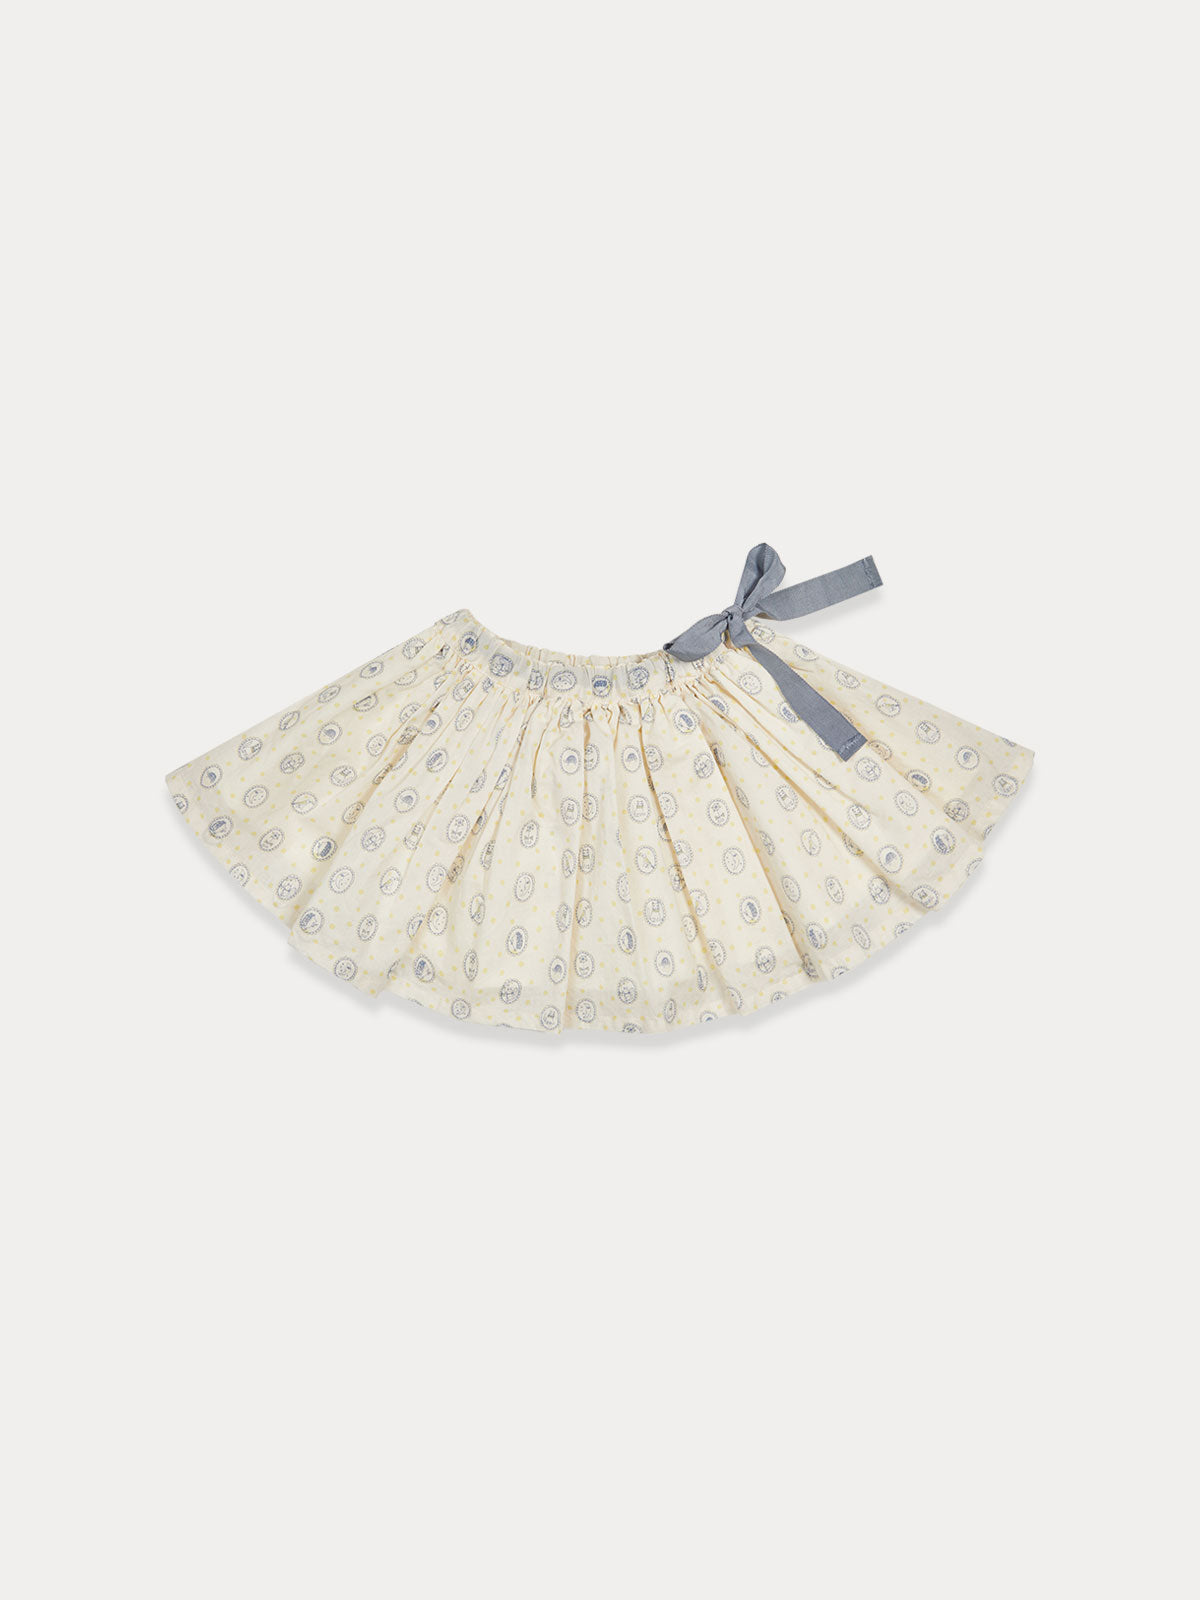 Abigail Full Skirt